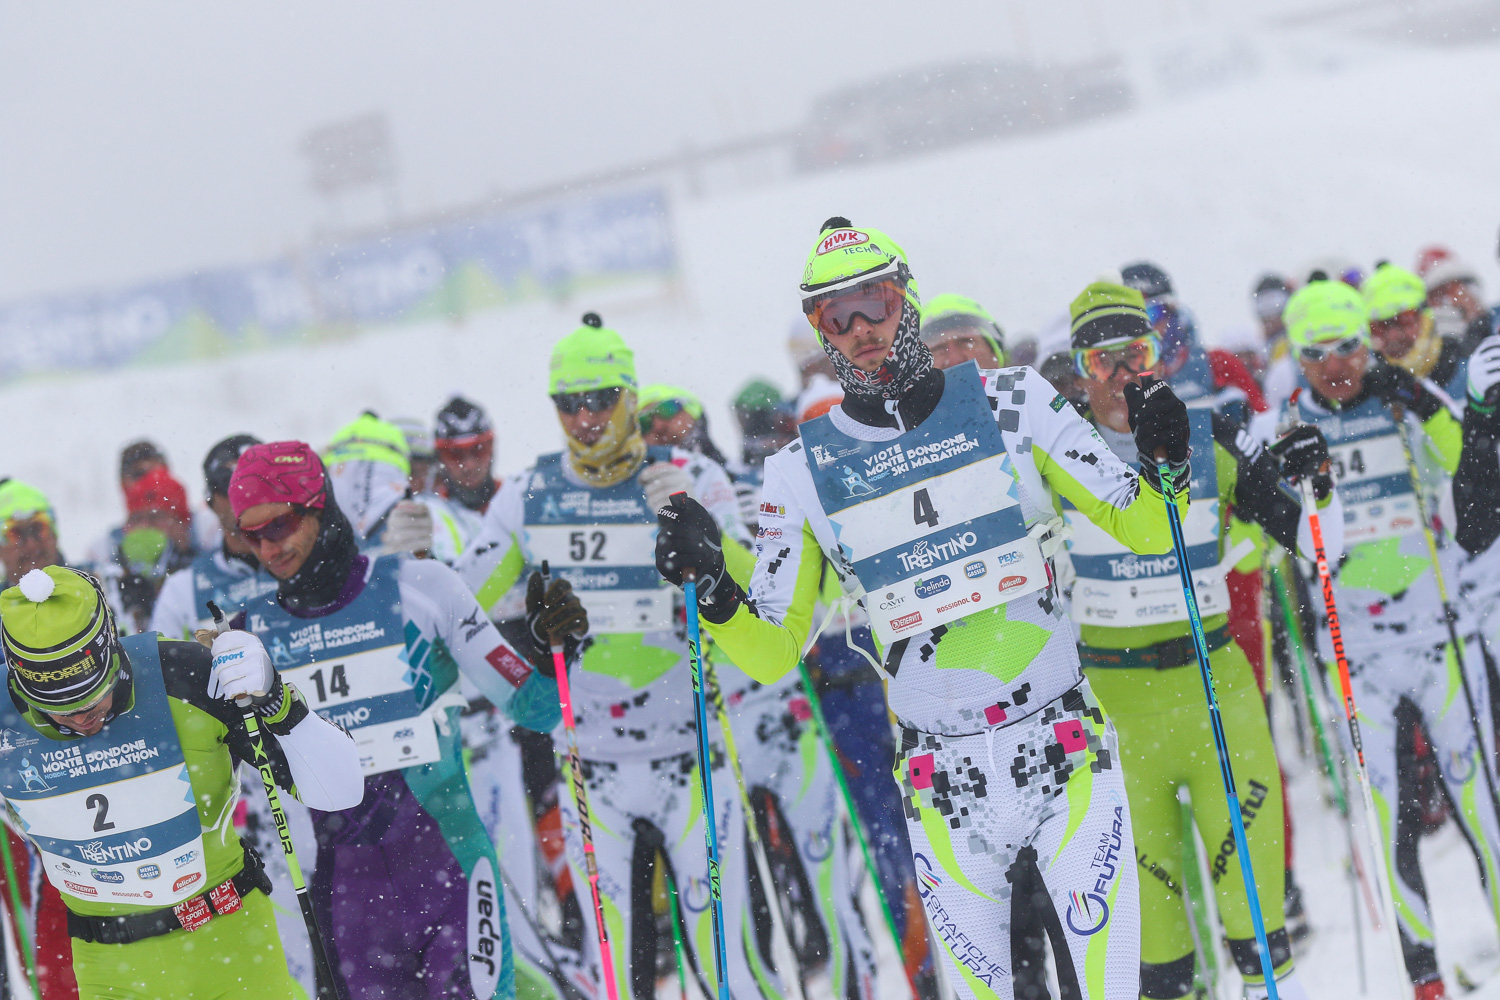 La partenza della Nordic Ski Marathon 2015